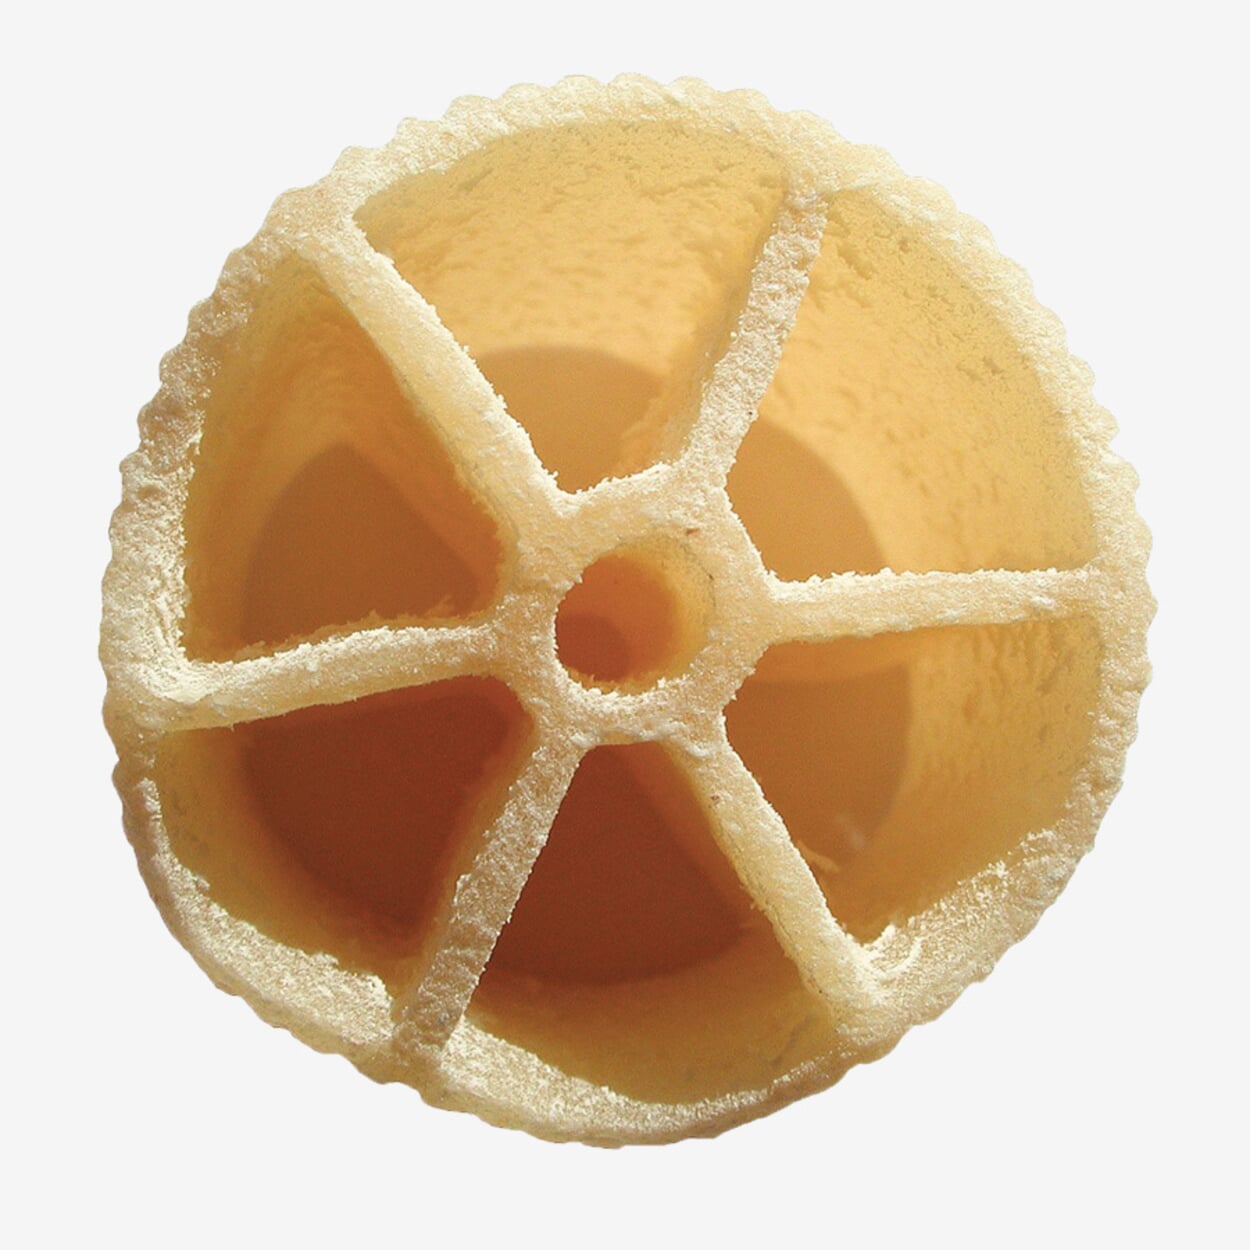 Het oppervlak van de afgewerkte pasta